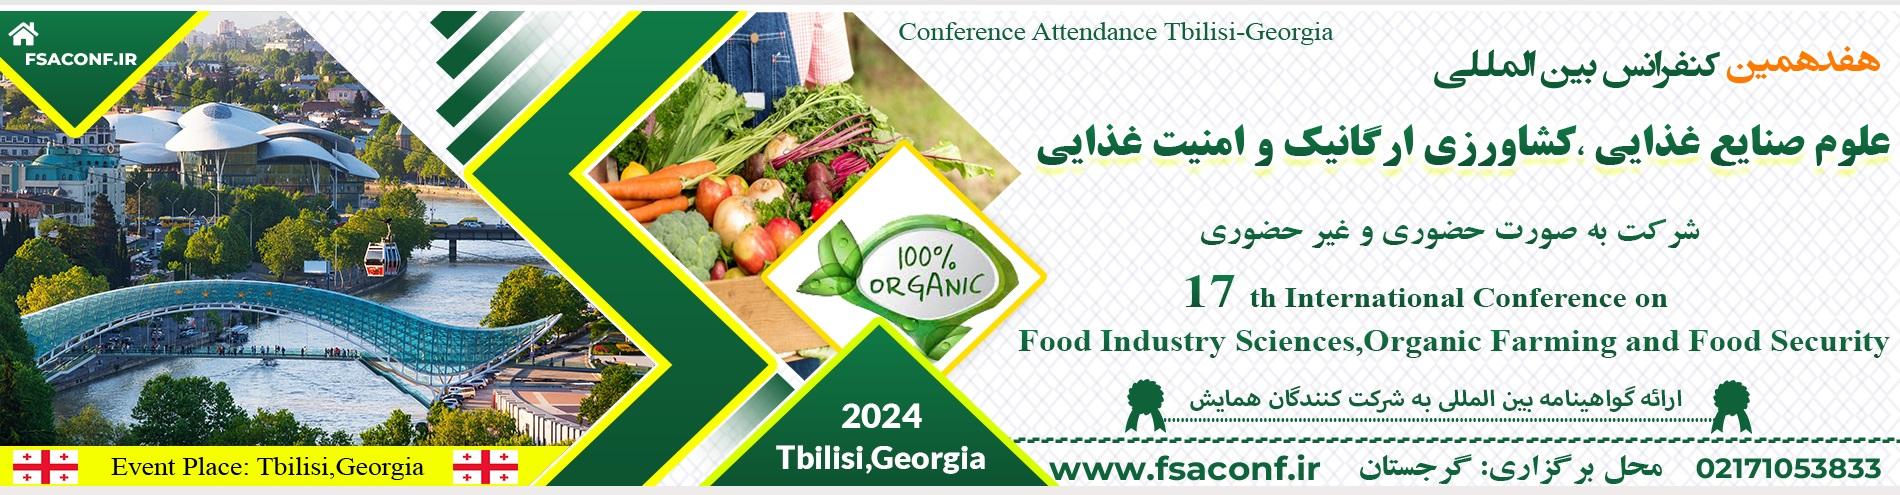 کنفرانس بین المللی علوم صنایع غذایی ، کشاورزی ارگانیک و امنیت غذایی